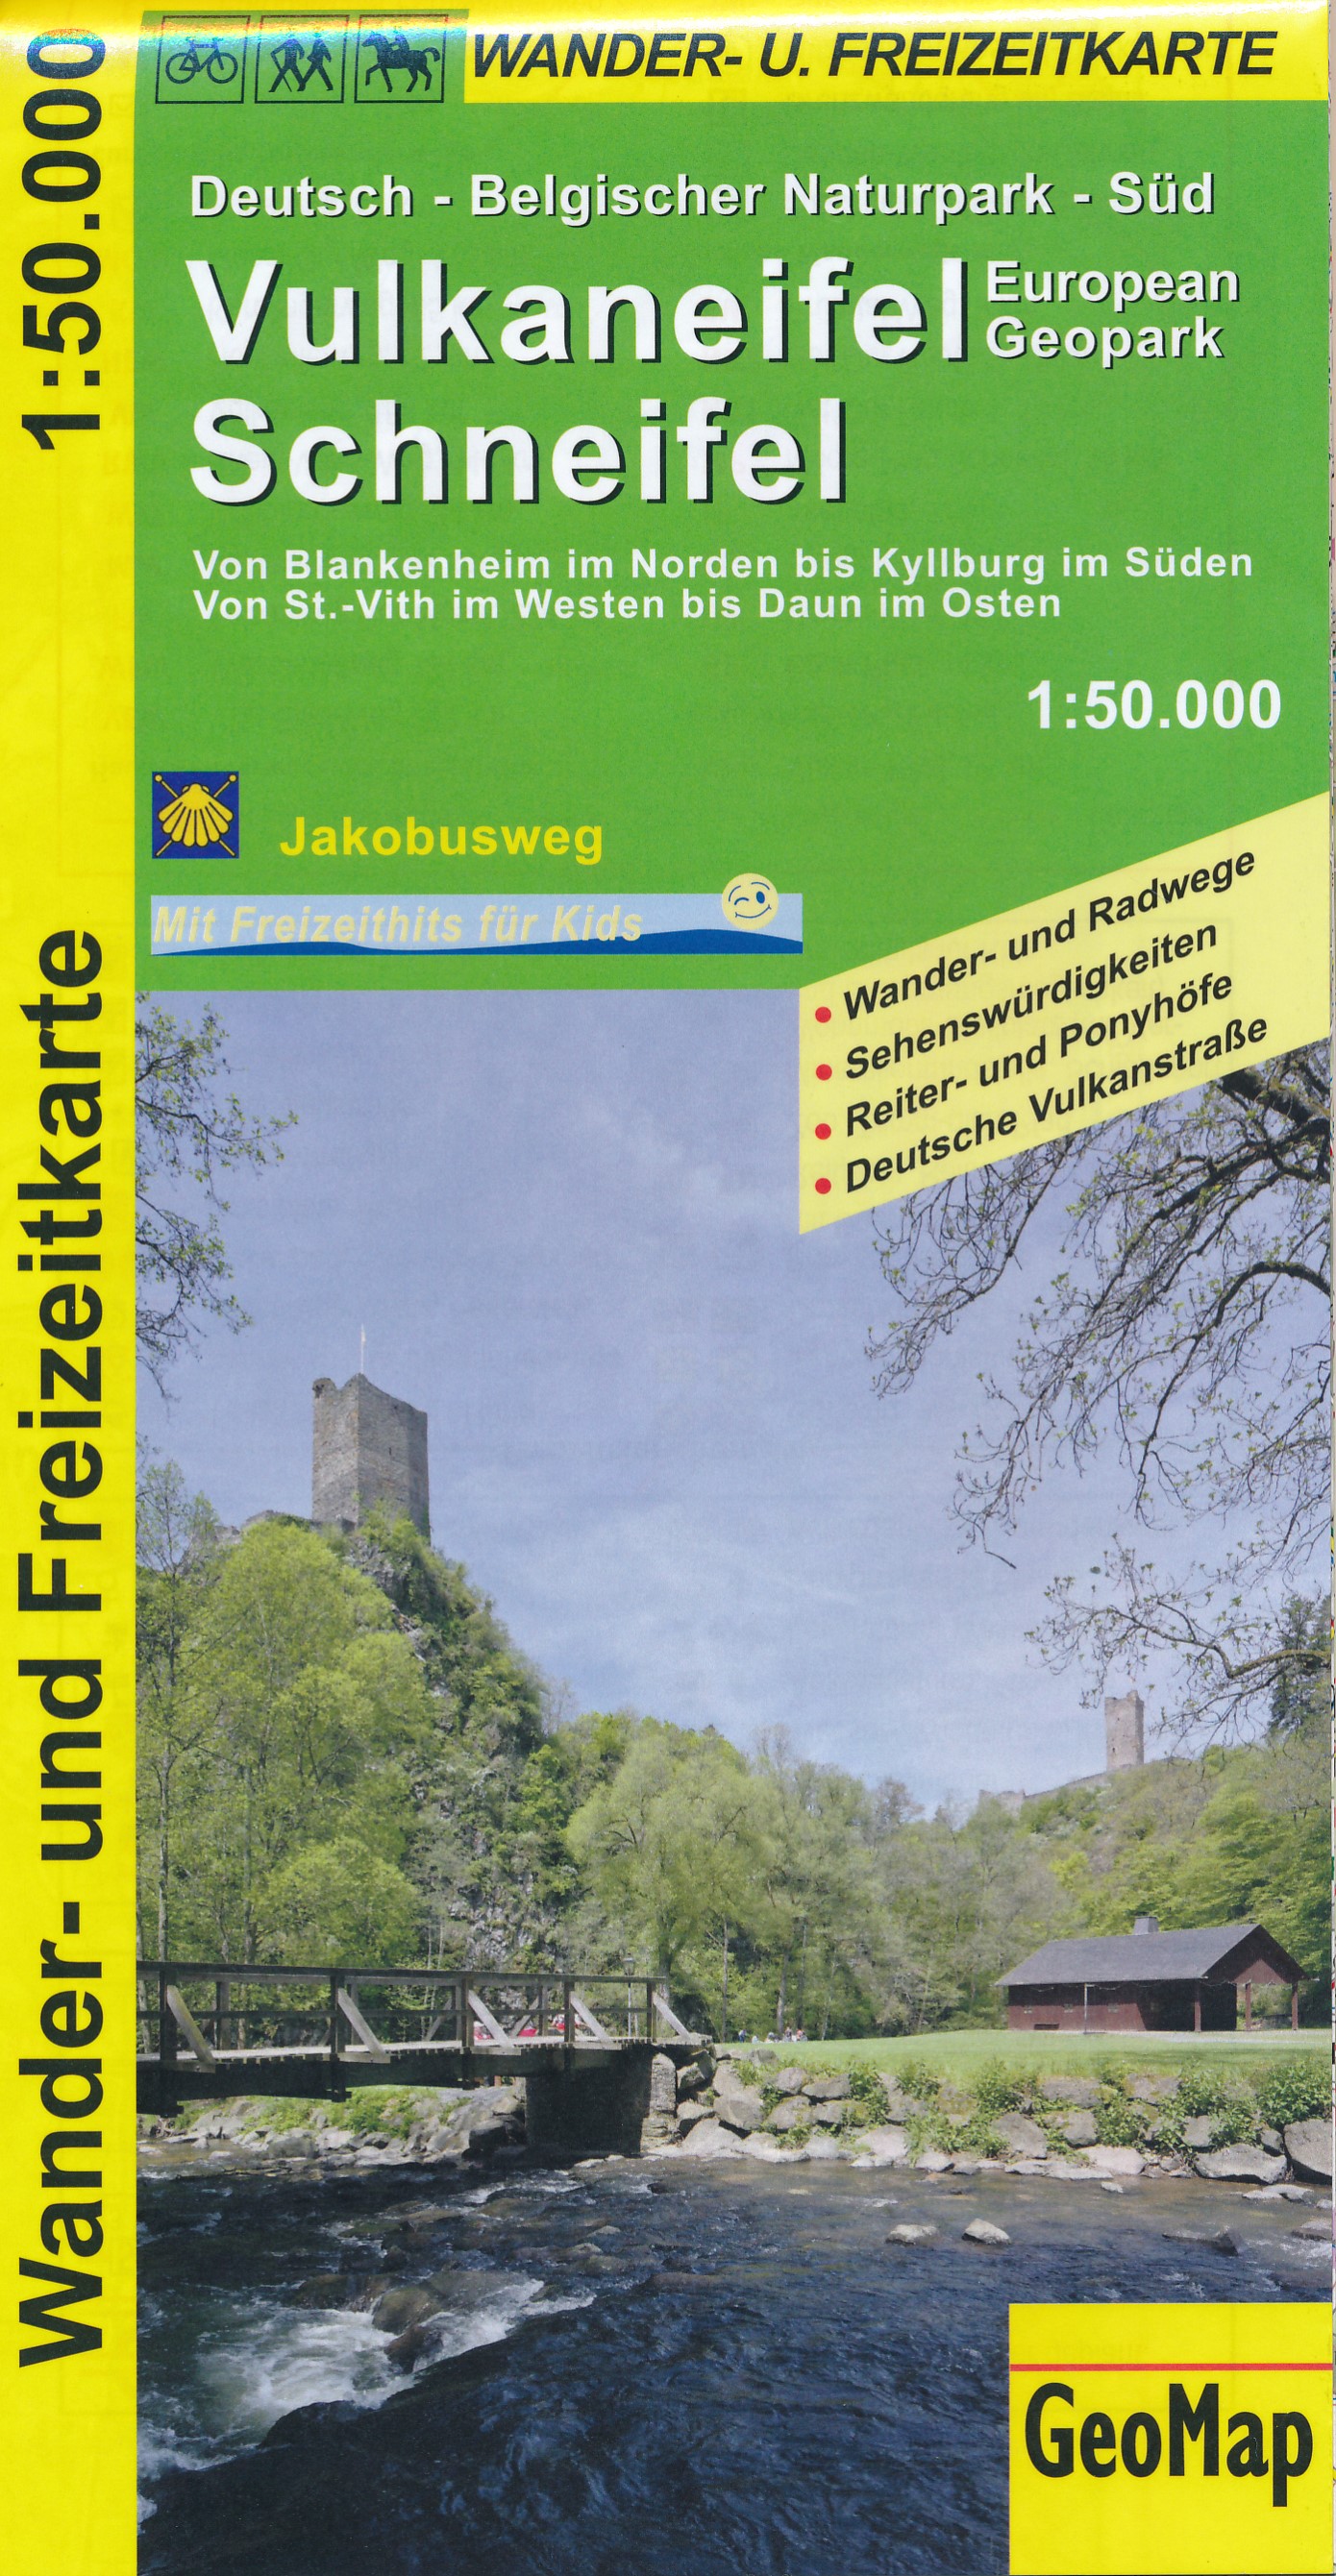 Online bestellen: Wandelkaart 44102 Vulkaneifel - Schneifel European Geopark | GeoMap